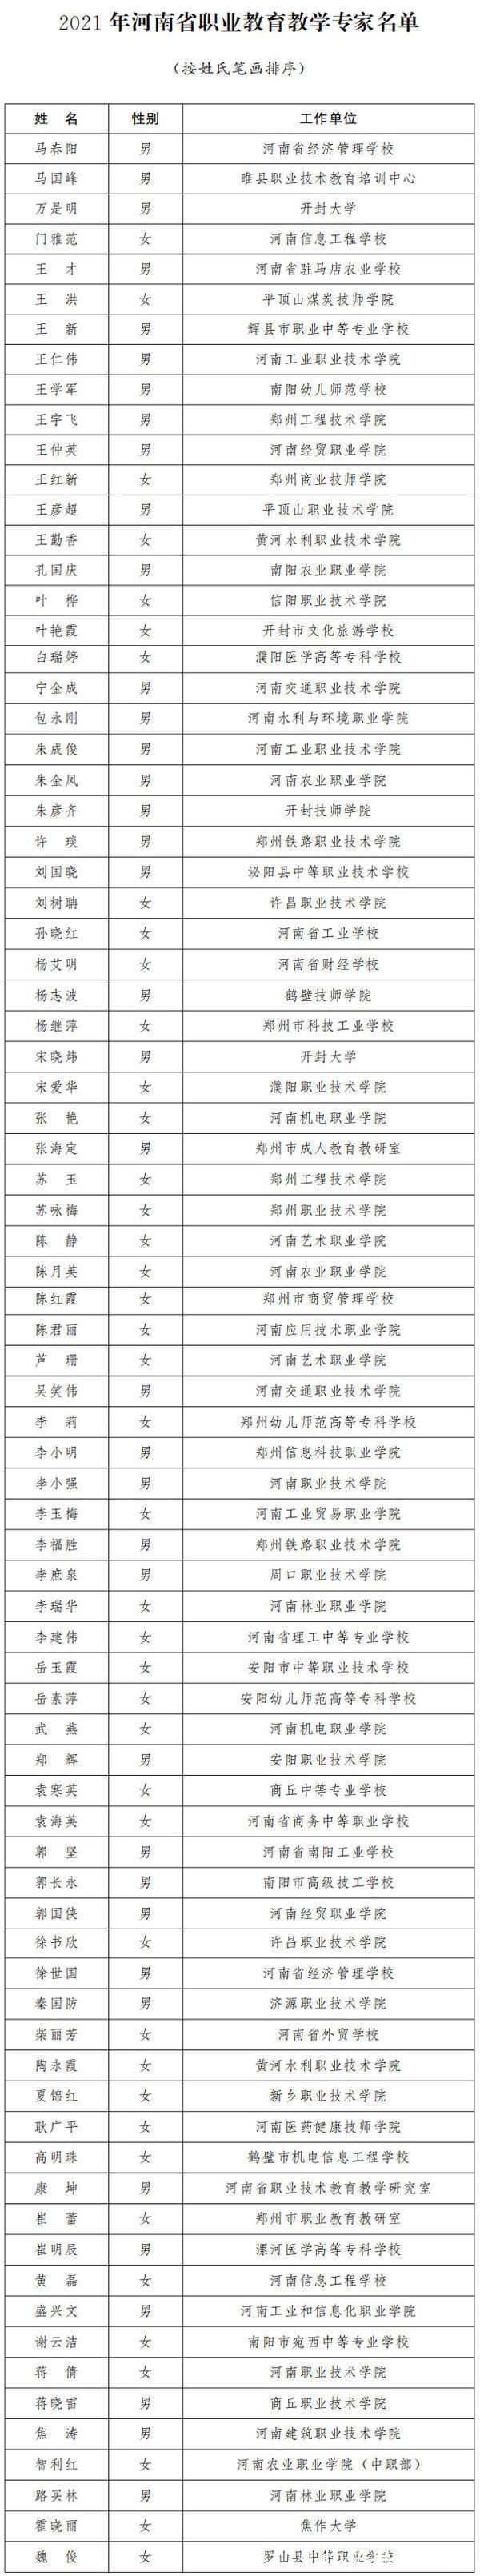 大河网讯|80名！2021年河南省职业教育教学专家名单公布